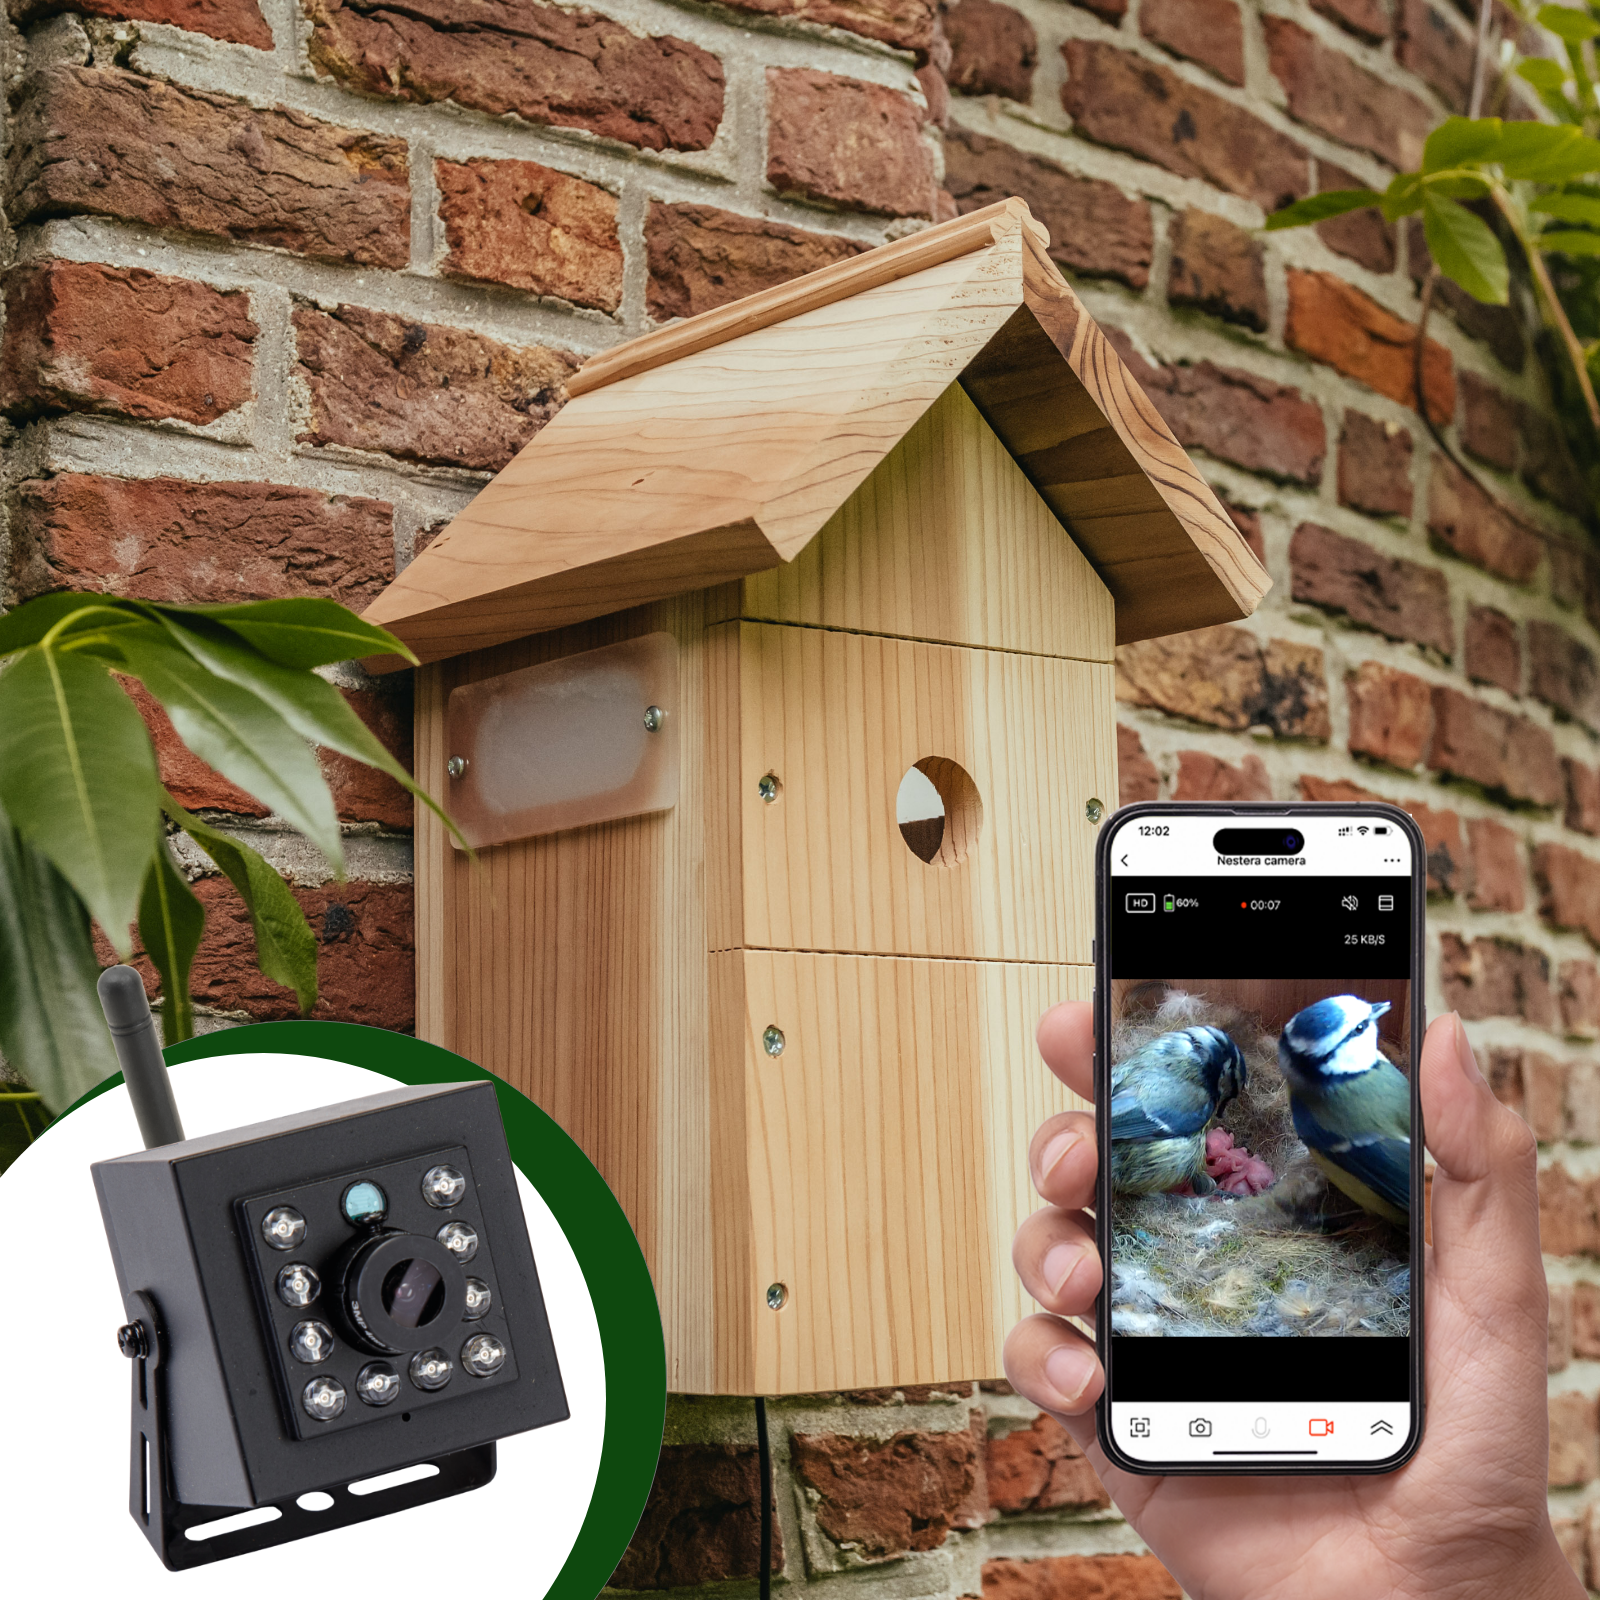 Caméra HD WiFi pour observer les oiseaux dans un nichoir - GFWF3 - Green  Feathers 